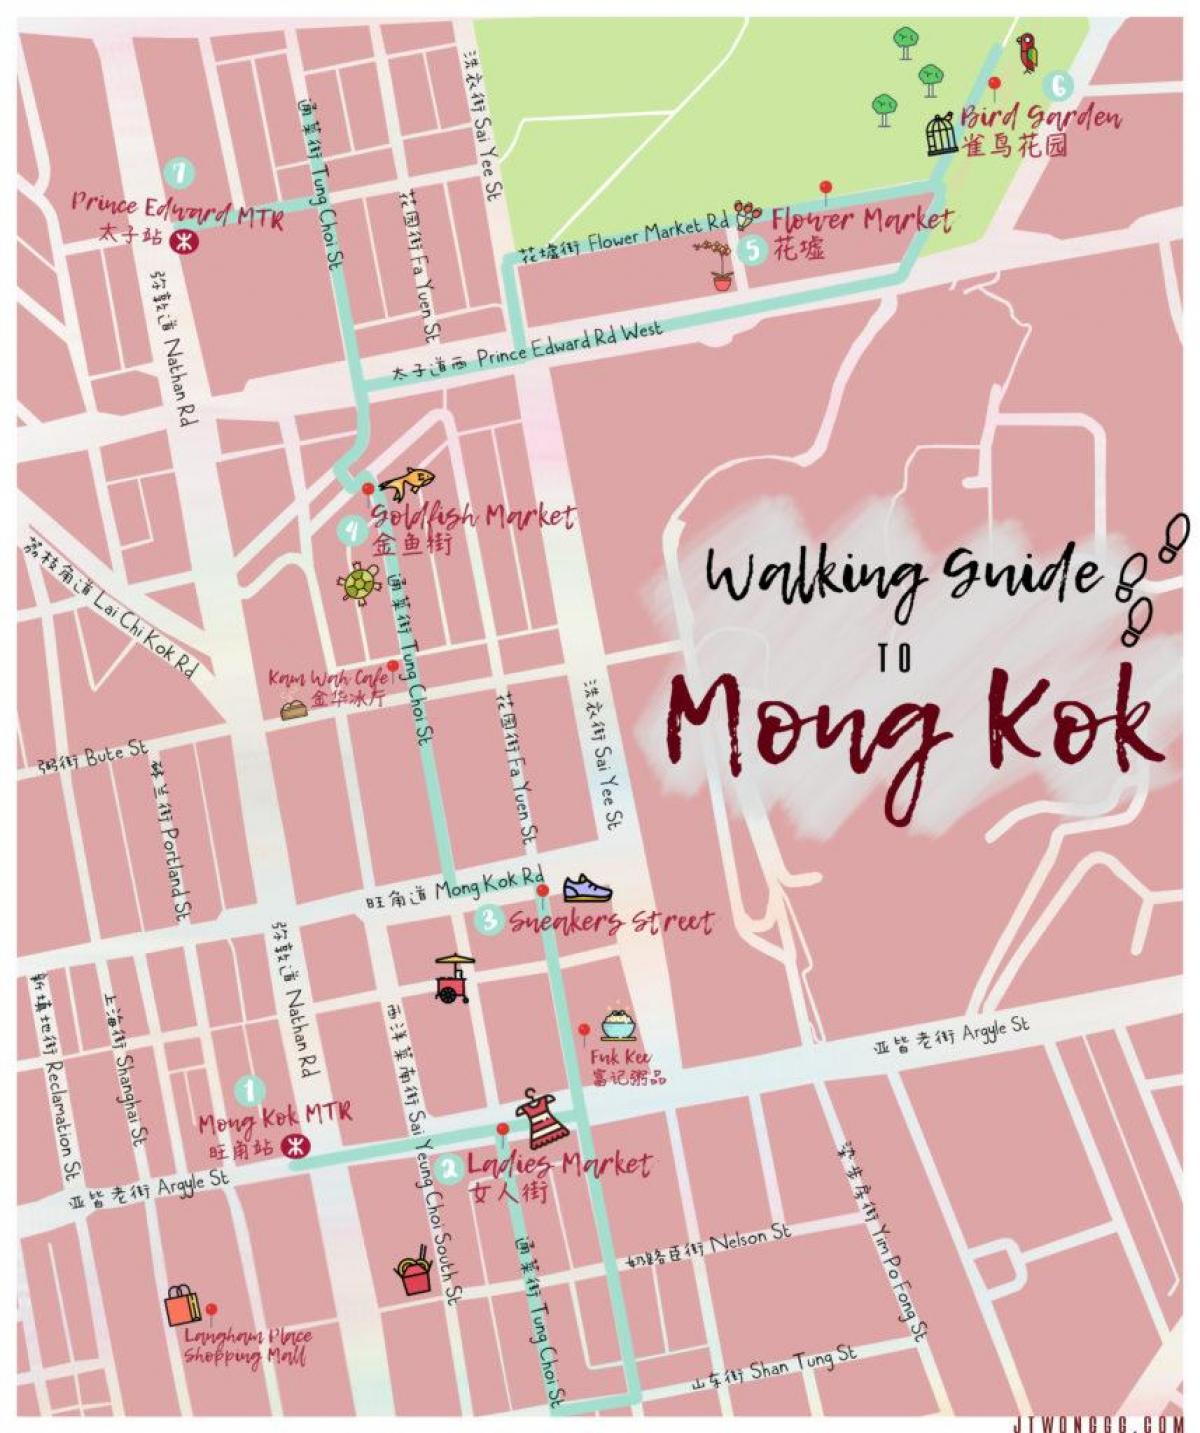 แผนที่ของ Mong Kok ฮ่องกง